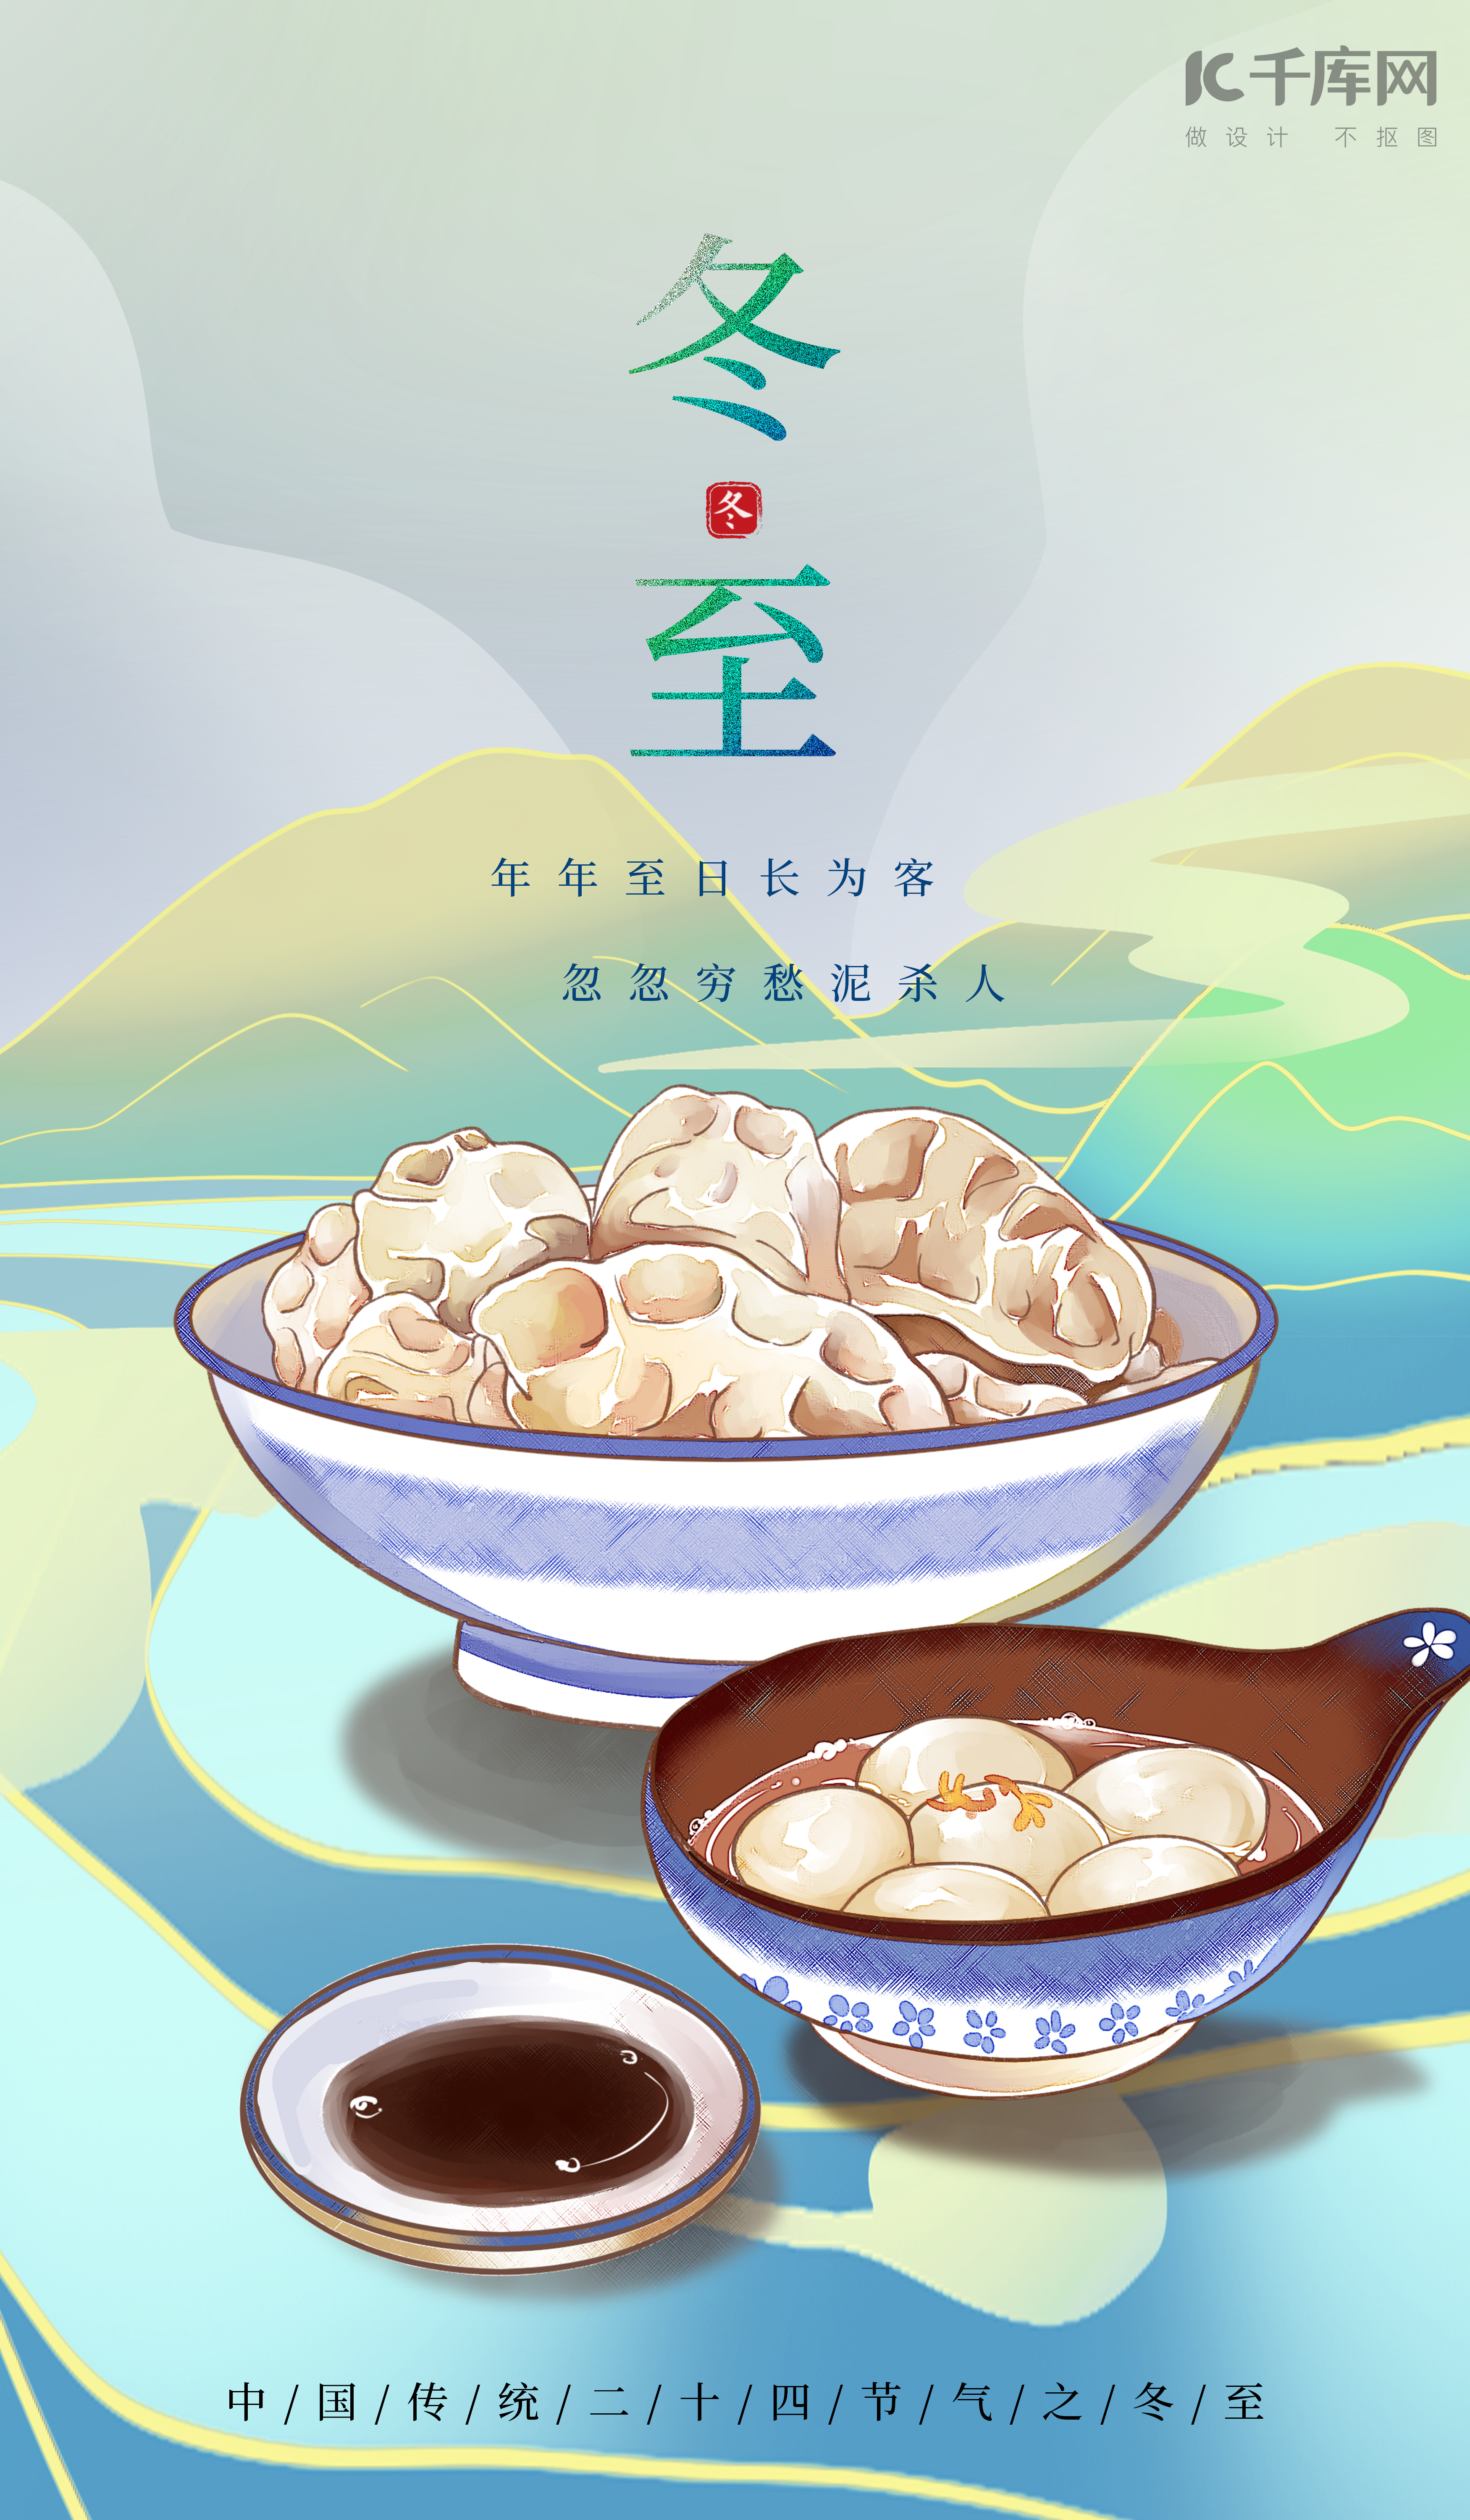 冬至饺子蓝绿色国潮海报图片